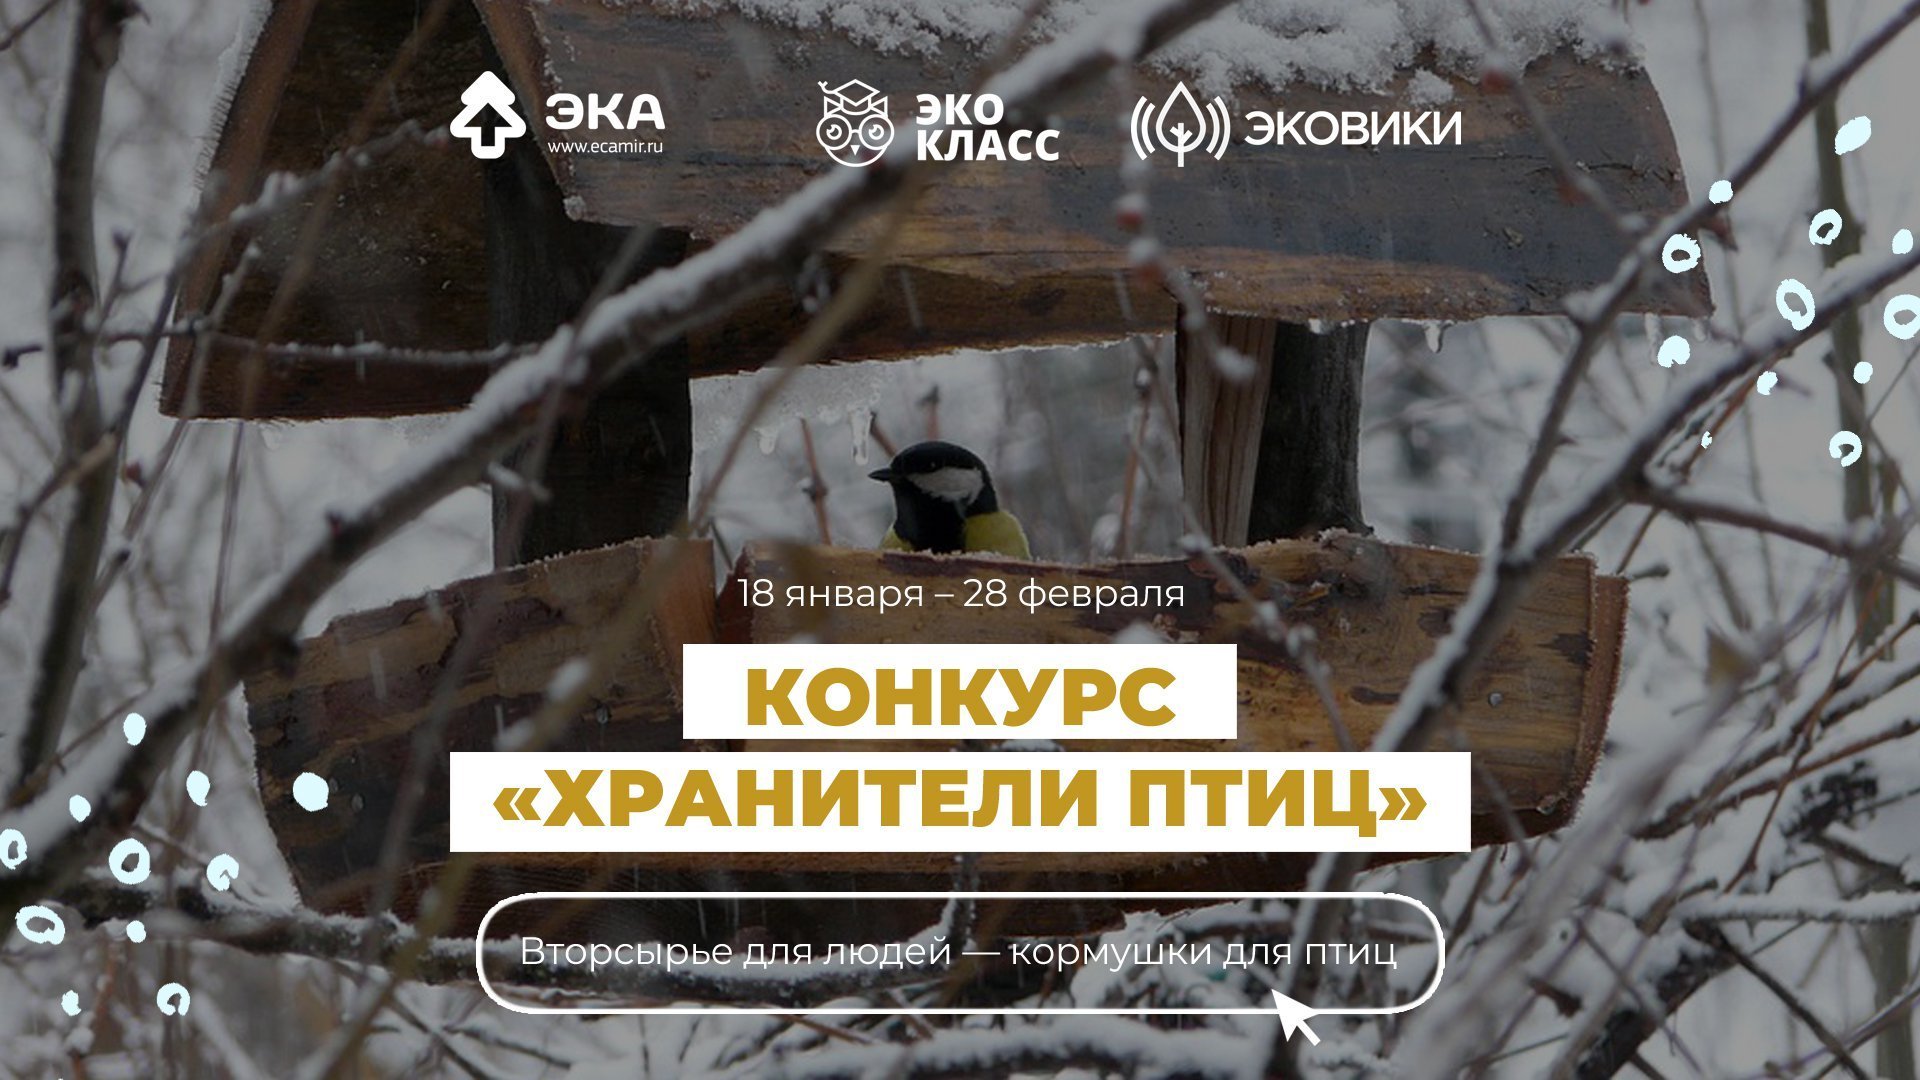 Афиша Ижевска — Акция «Хранители птиц»